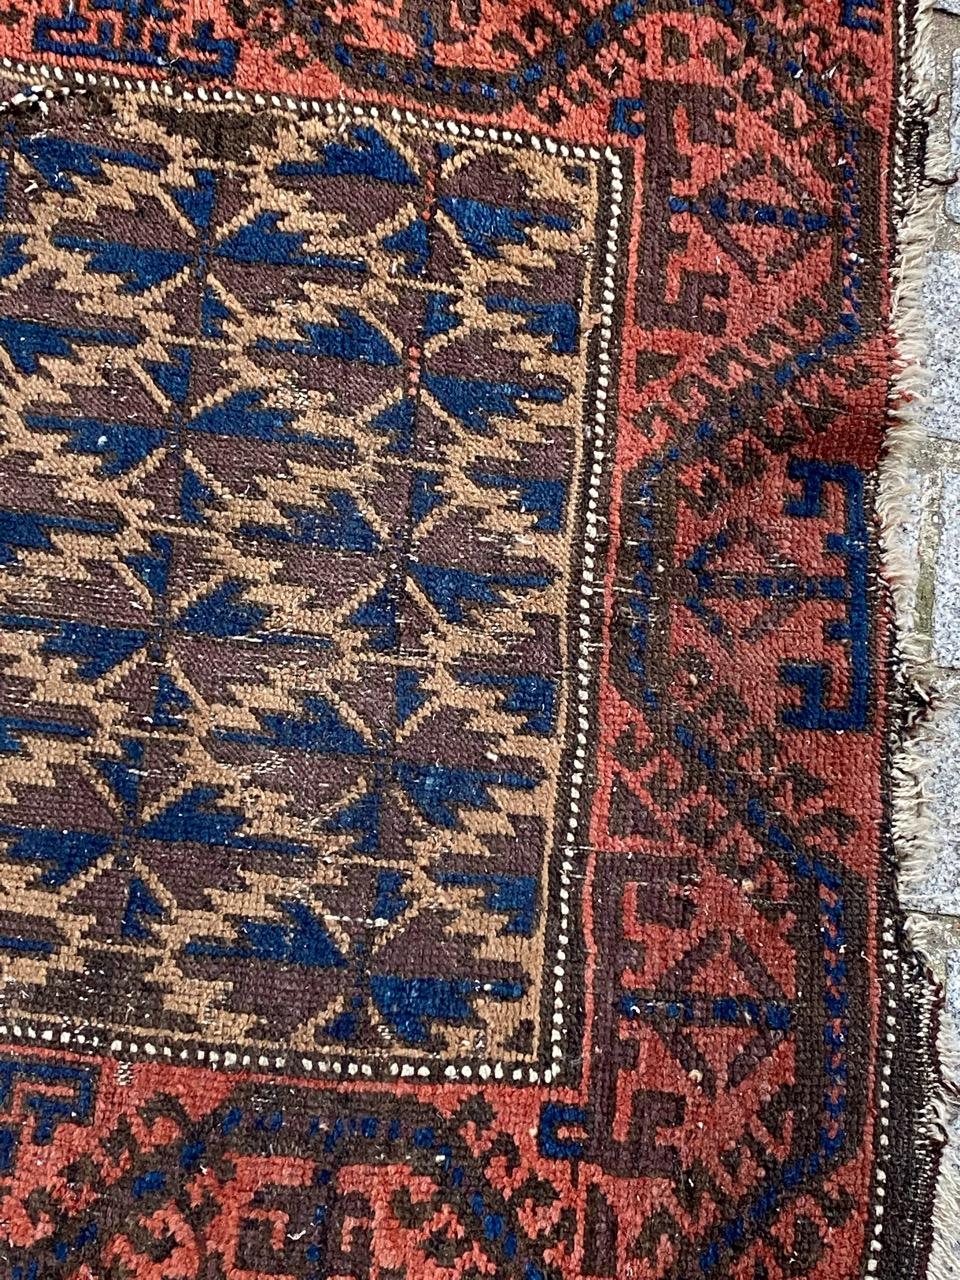 Kleiner Belutsch-Afghanischer Teppich aus dem späten 19. Jahrhundert mit schönem Stammesmuster und schönen natürlichen Farben, komplett handgeknüpft mit Wollsamt auf Wollfond.

✨✨✨
